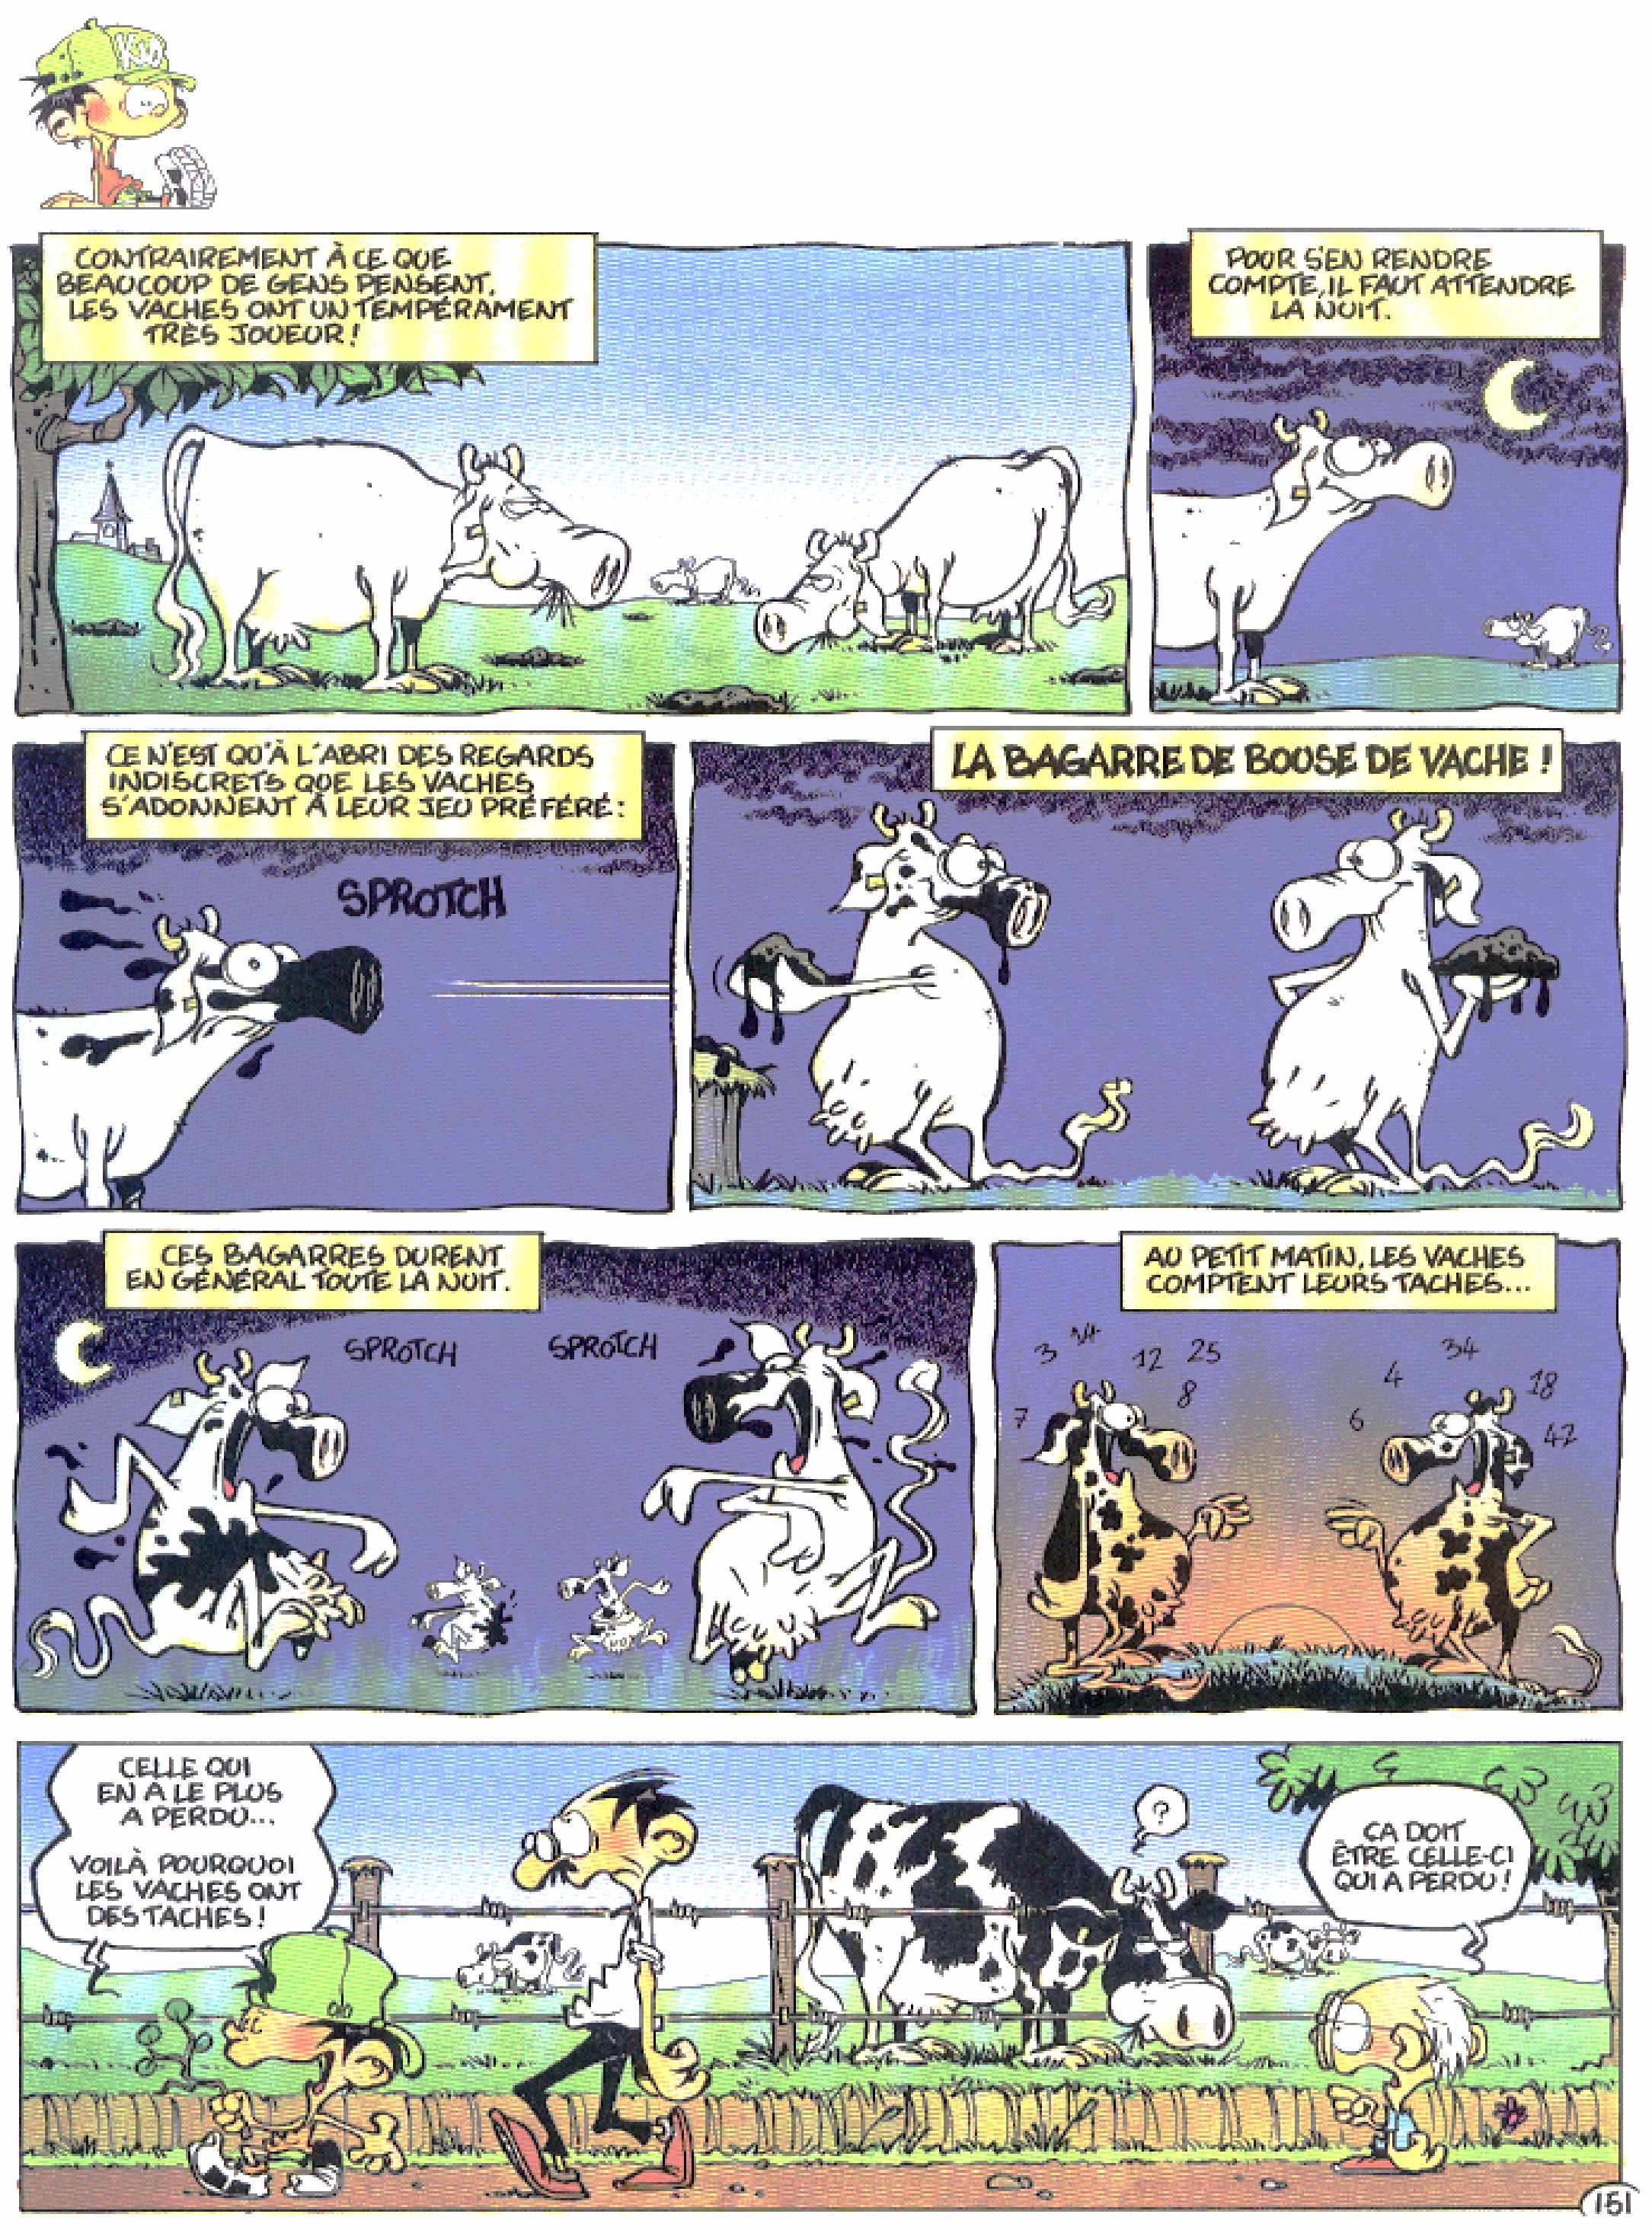 Pourquoi les vaches ont-elles des taches?